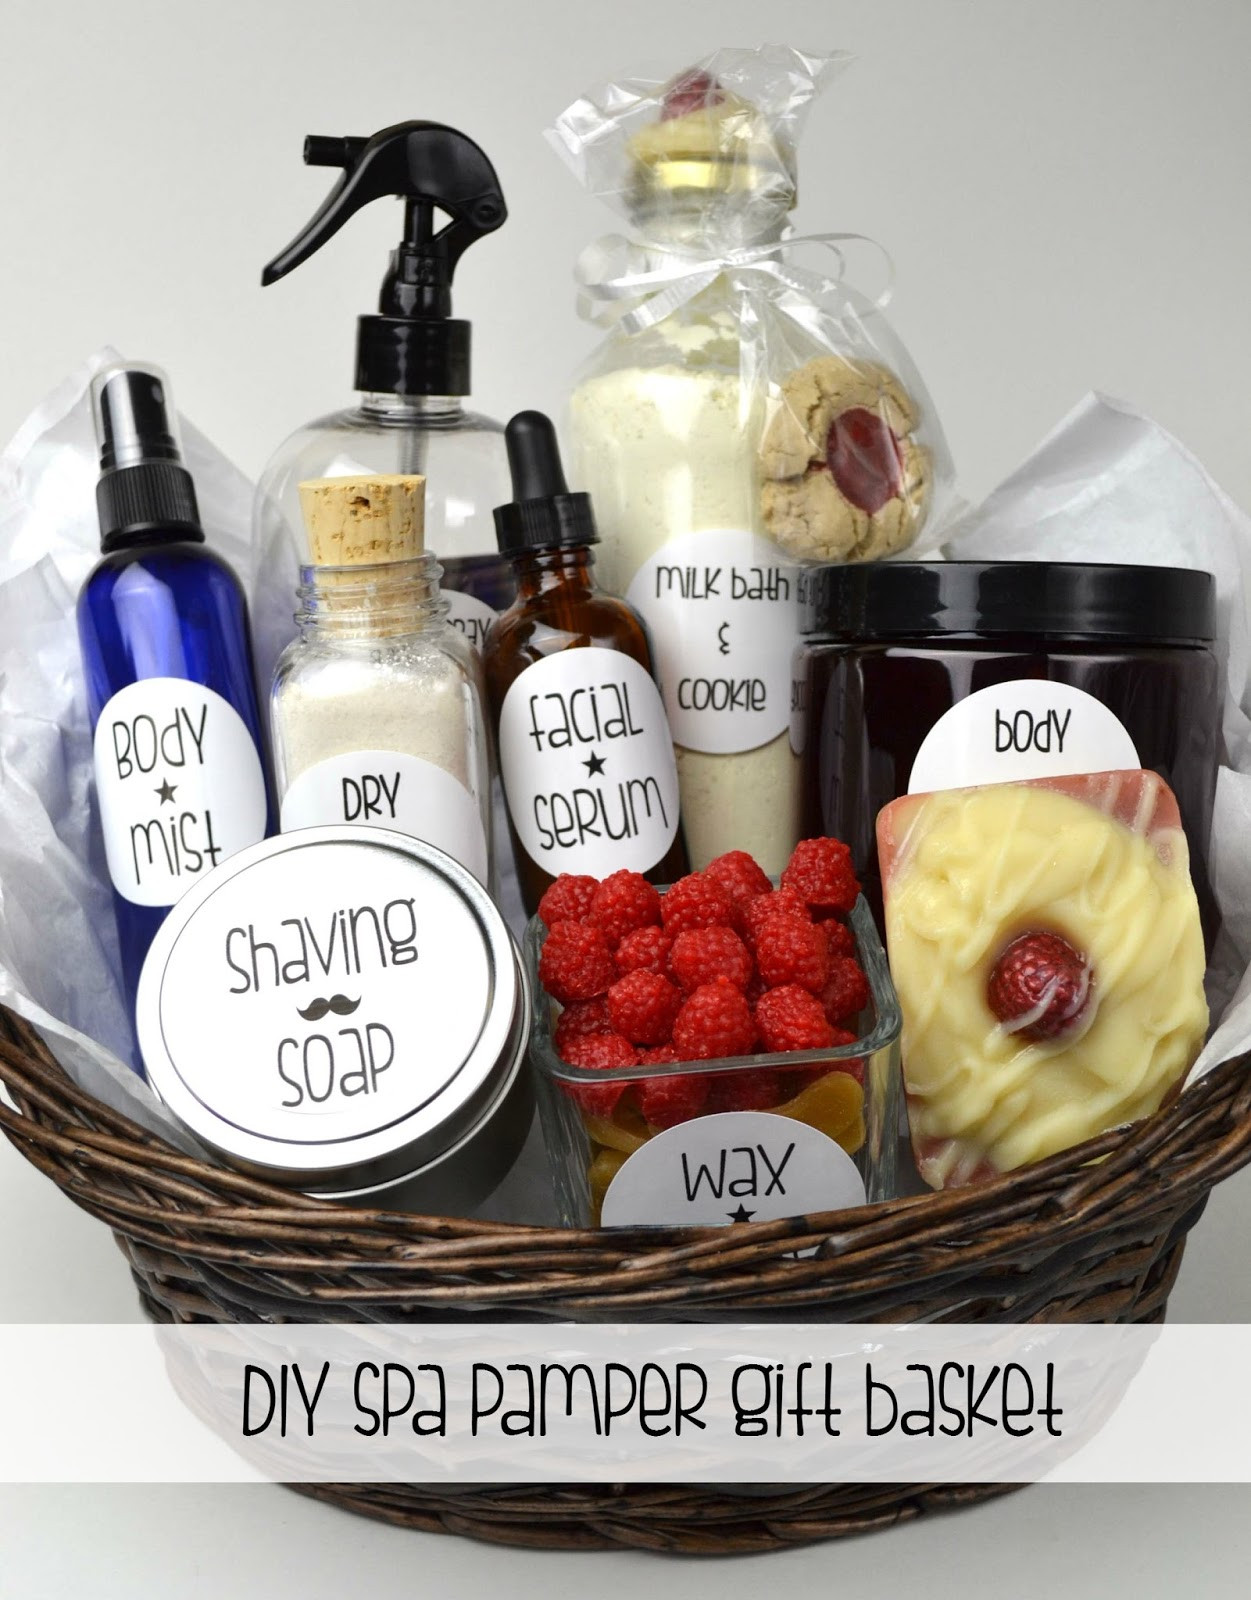 DIY Bath Gift Basket
 Oil & Butter DIY Spa Pamper Gift Basket